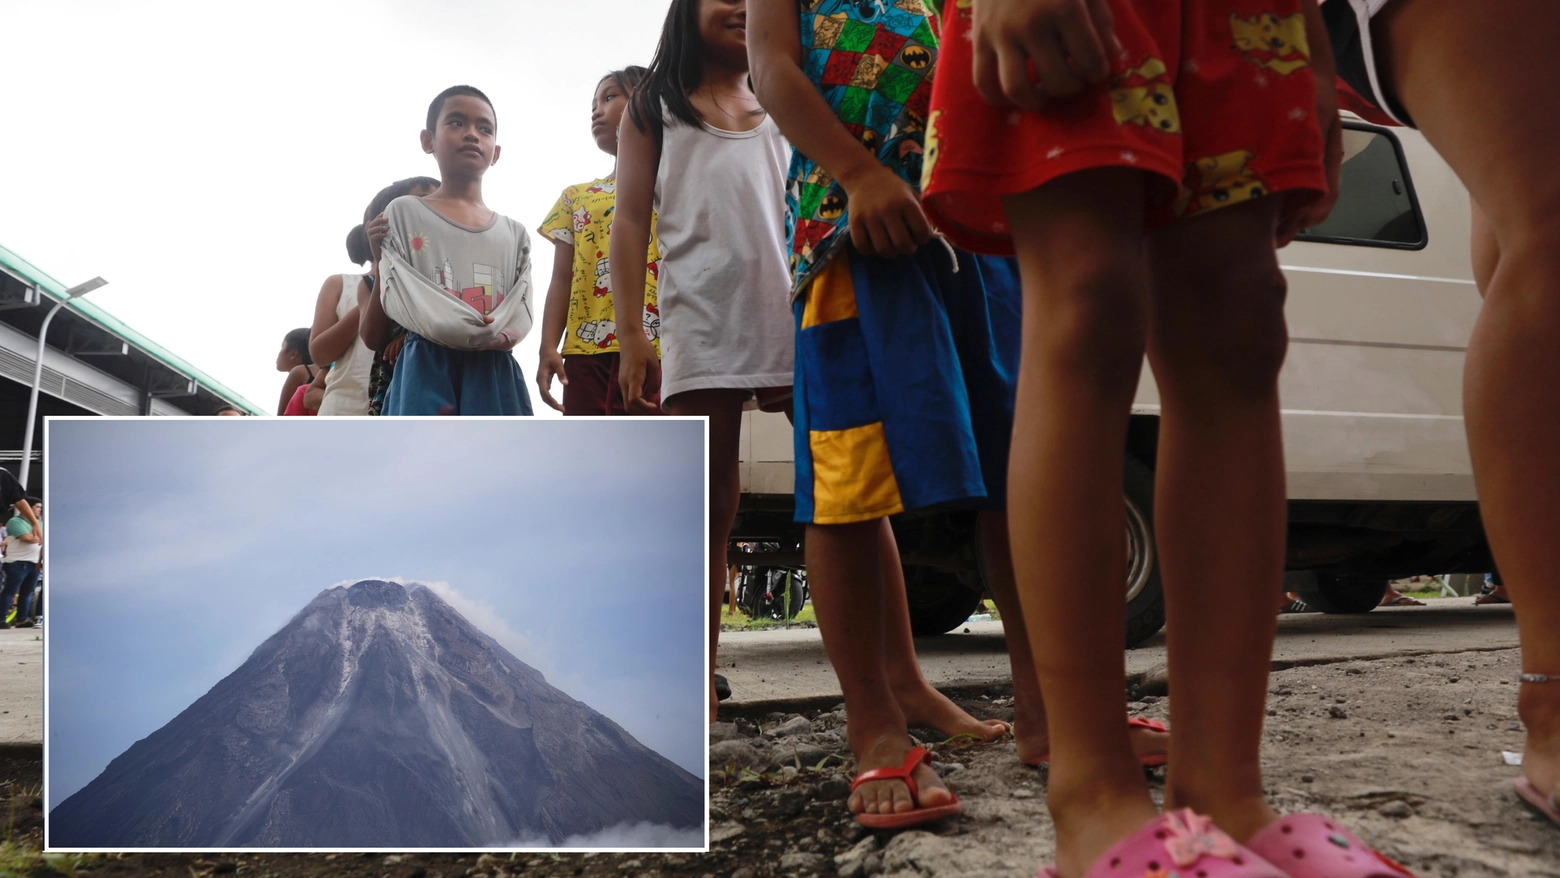 Bambini evacuati nelle Filippine per l'eruzione del vulcano Mayon (Ansa)